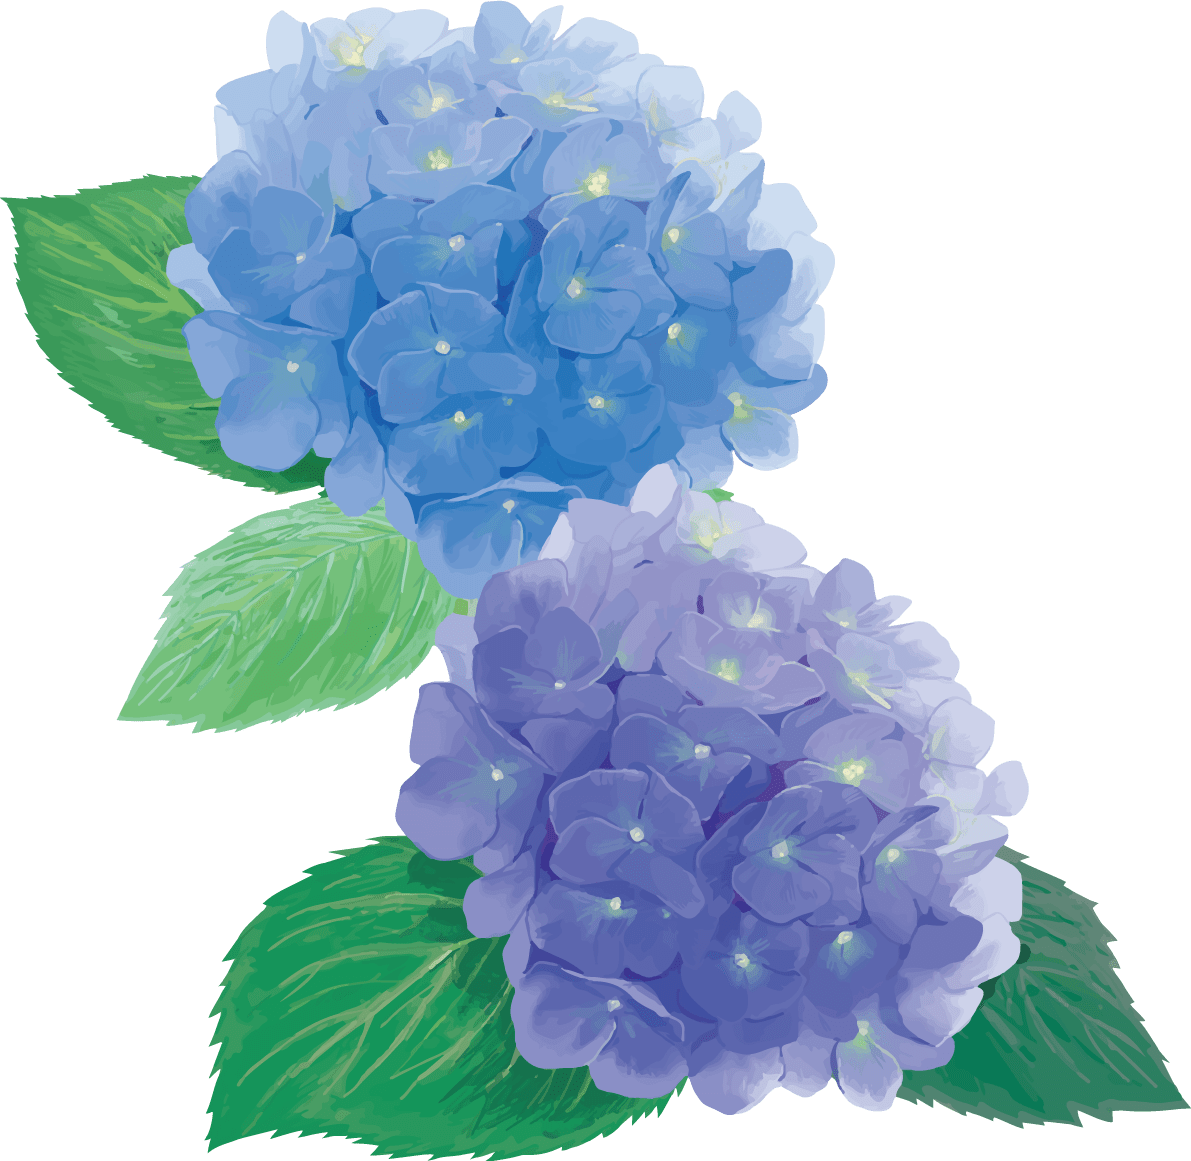 时尚漂亮的紫色和蓝色的绣球花插图 梅雨 插图素材 Ui 123 100万矢量插图素材 免费下载